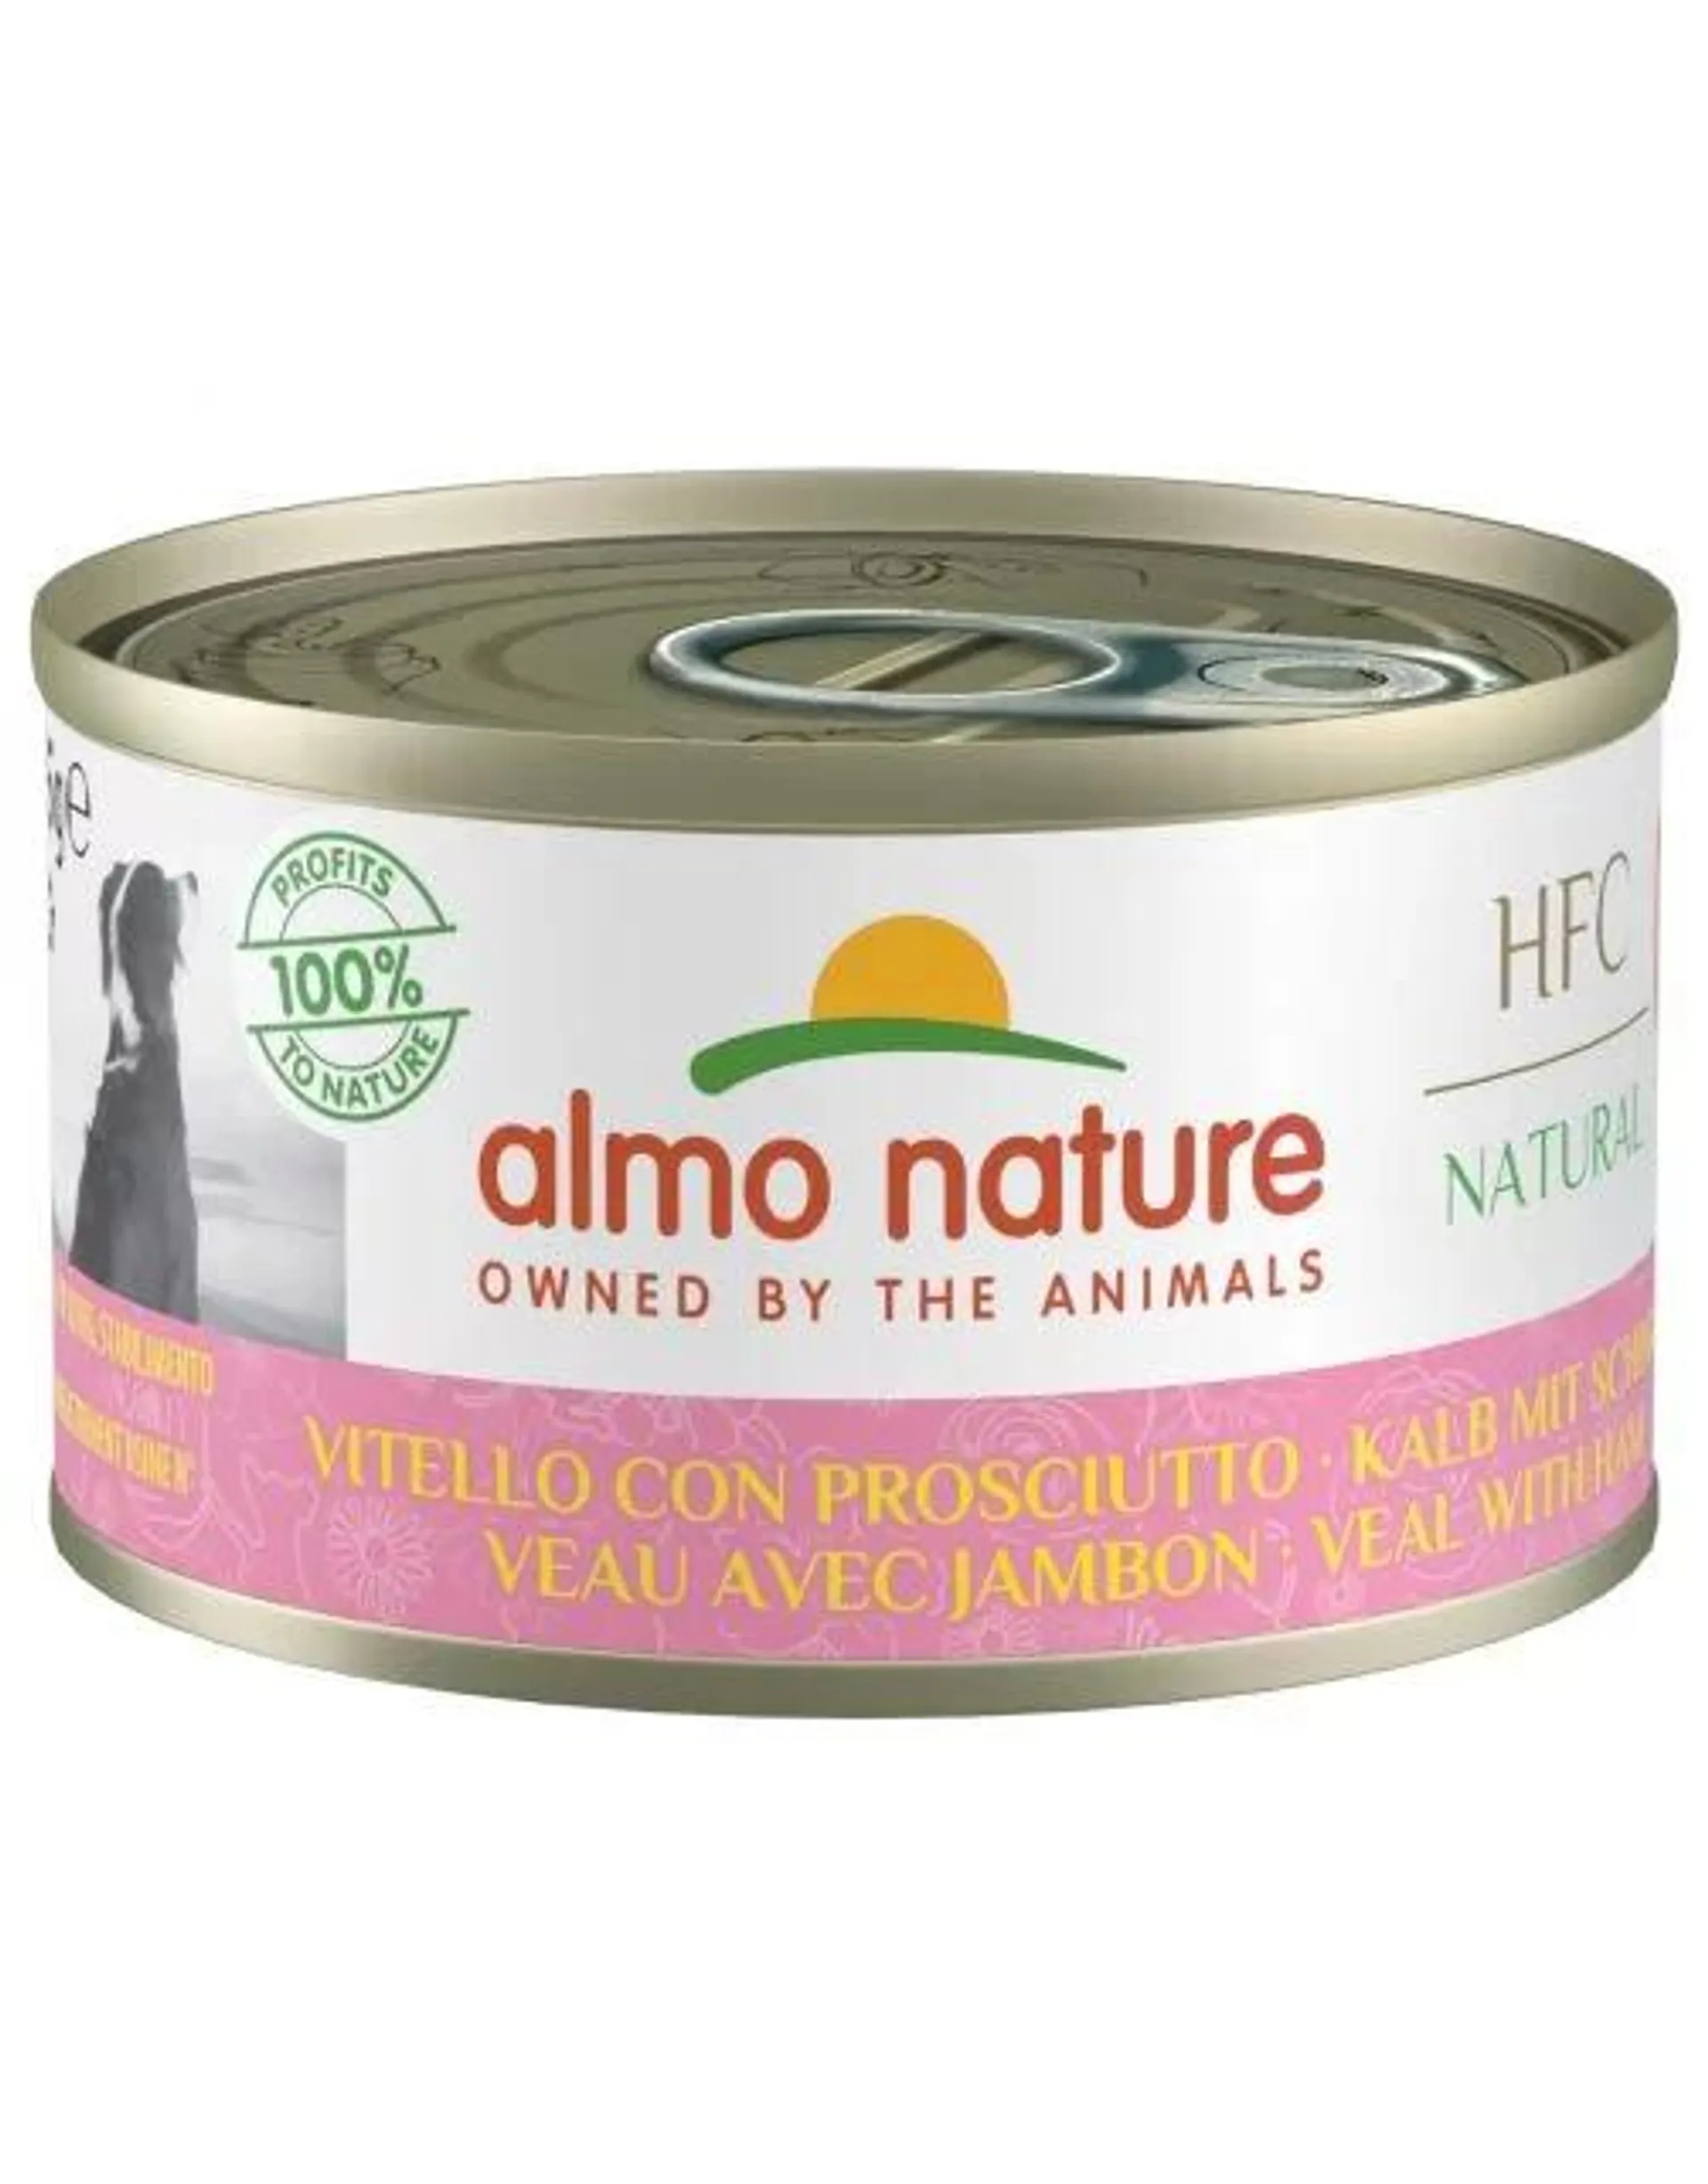 Almo Nature Hfc Dog Natural 95 g - Hondenvoer - Kalfsvlees&Ham